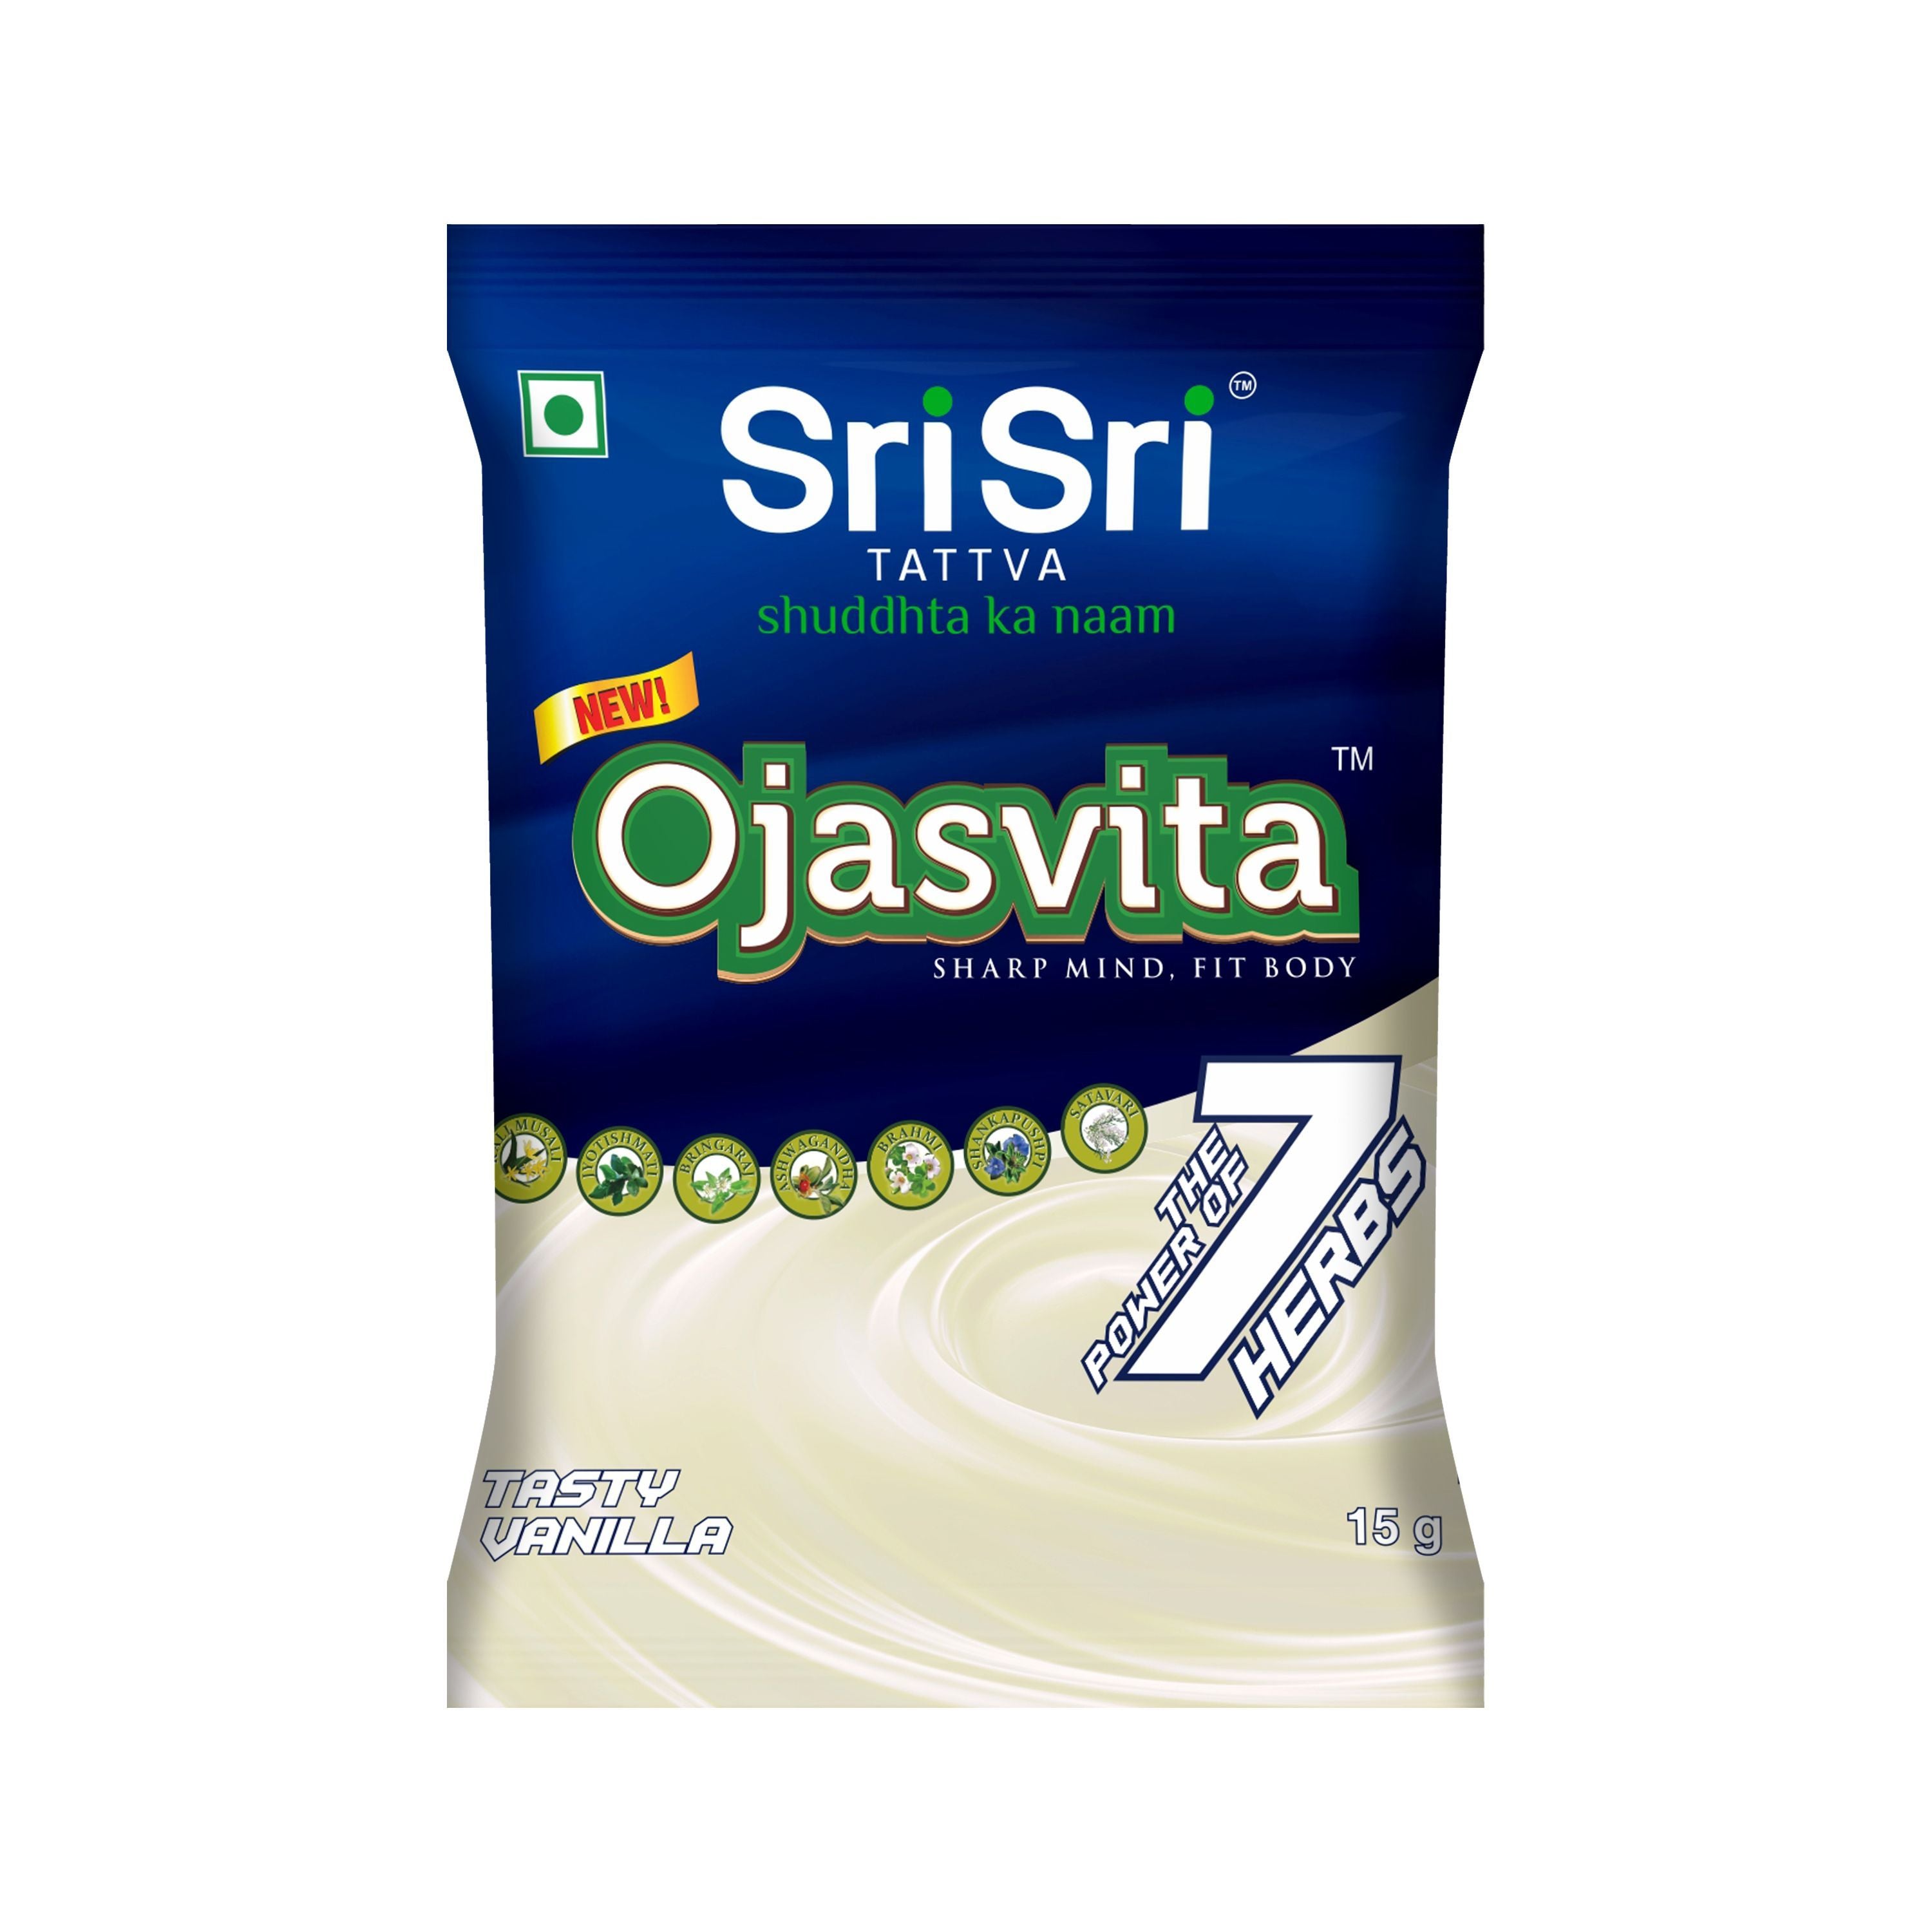 Vanilla Ojasvita - Sharp Mind & Fit Body, 15g - Sri Sri Tattva